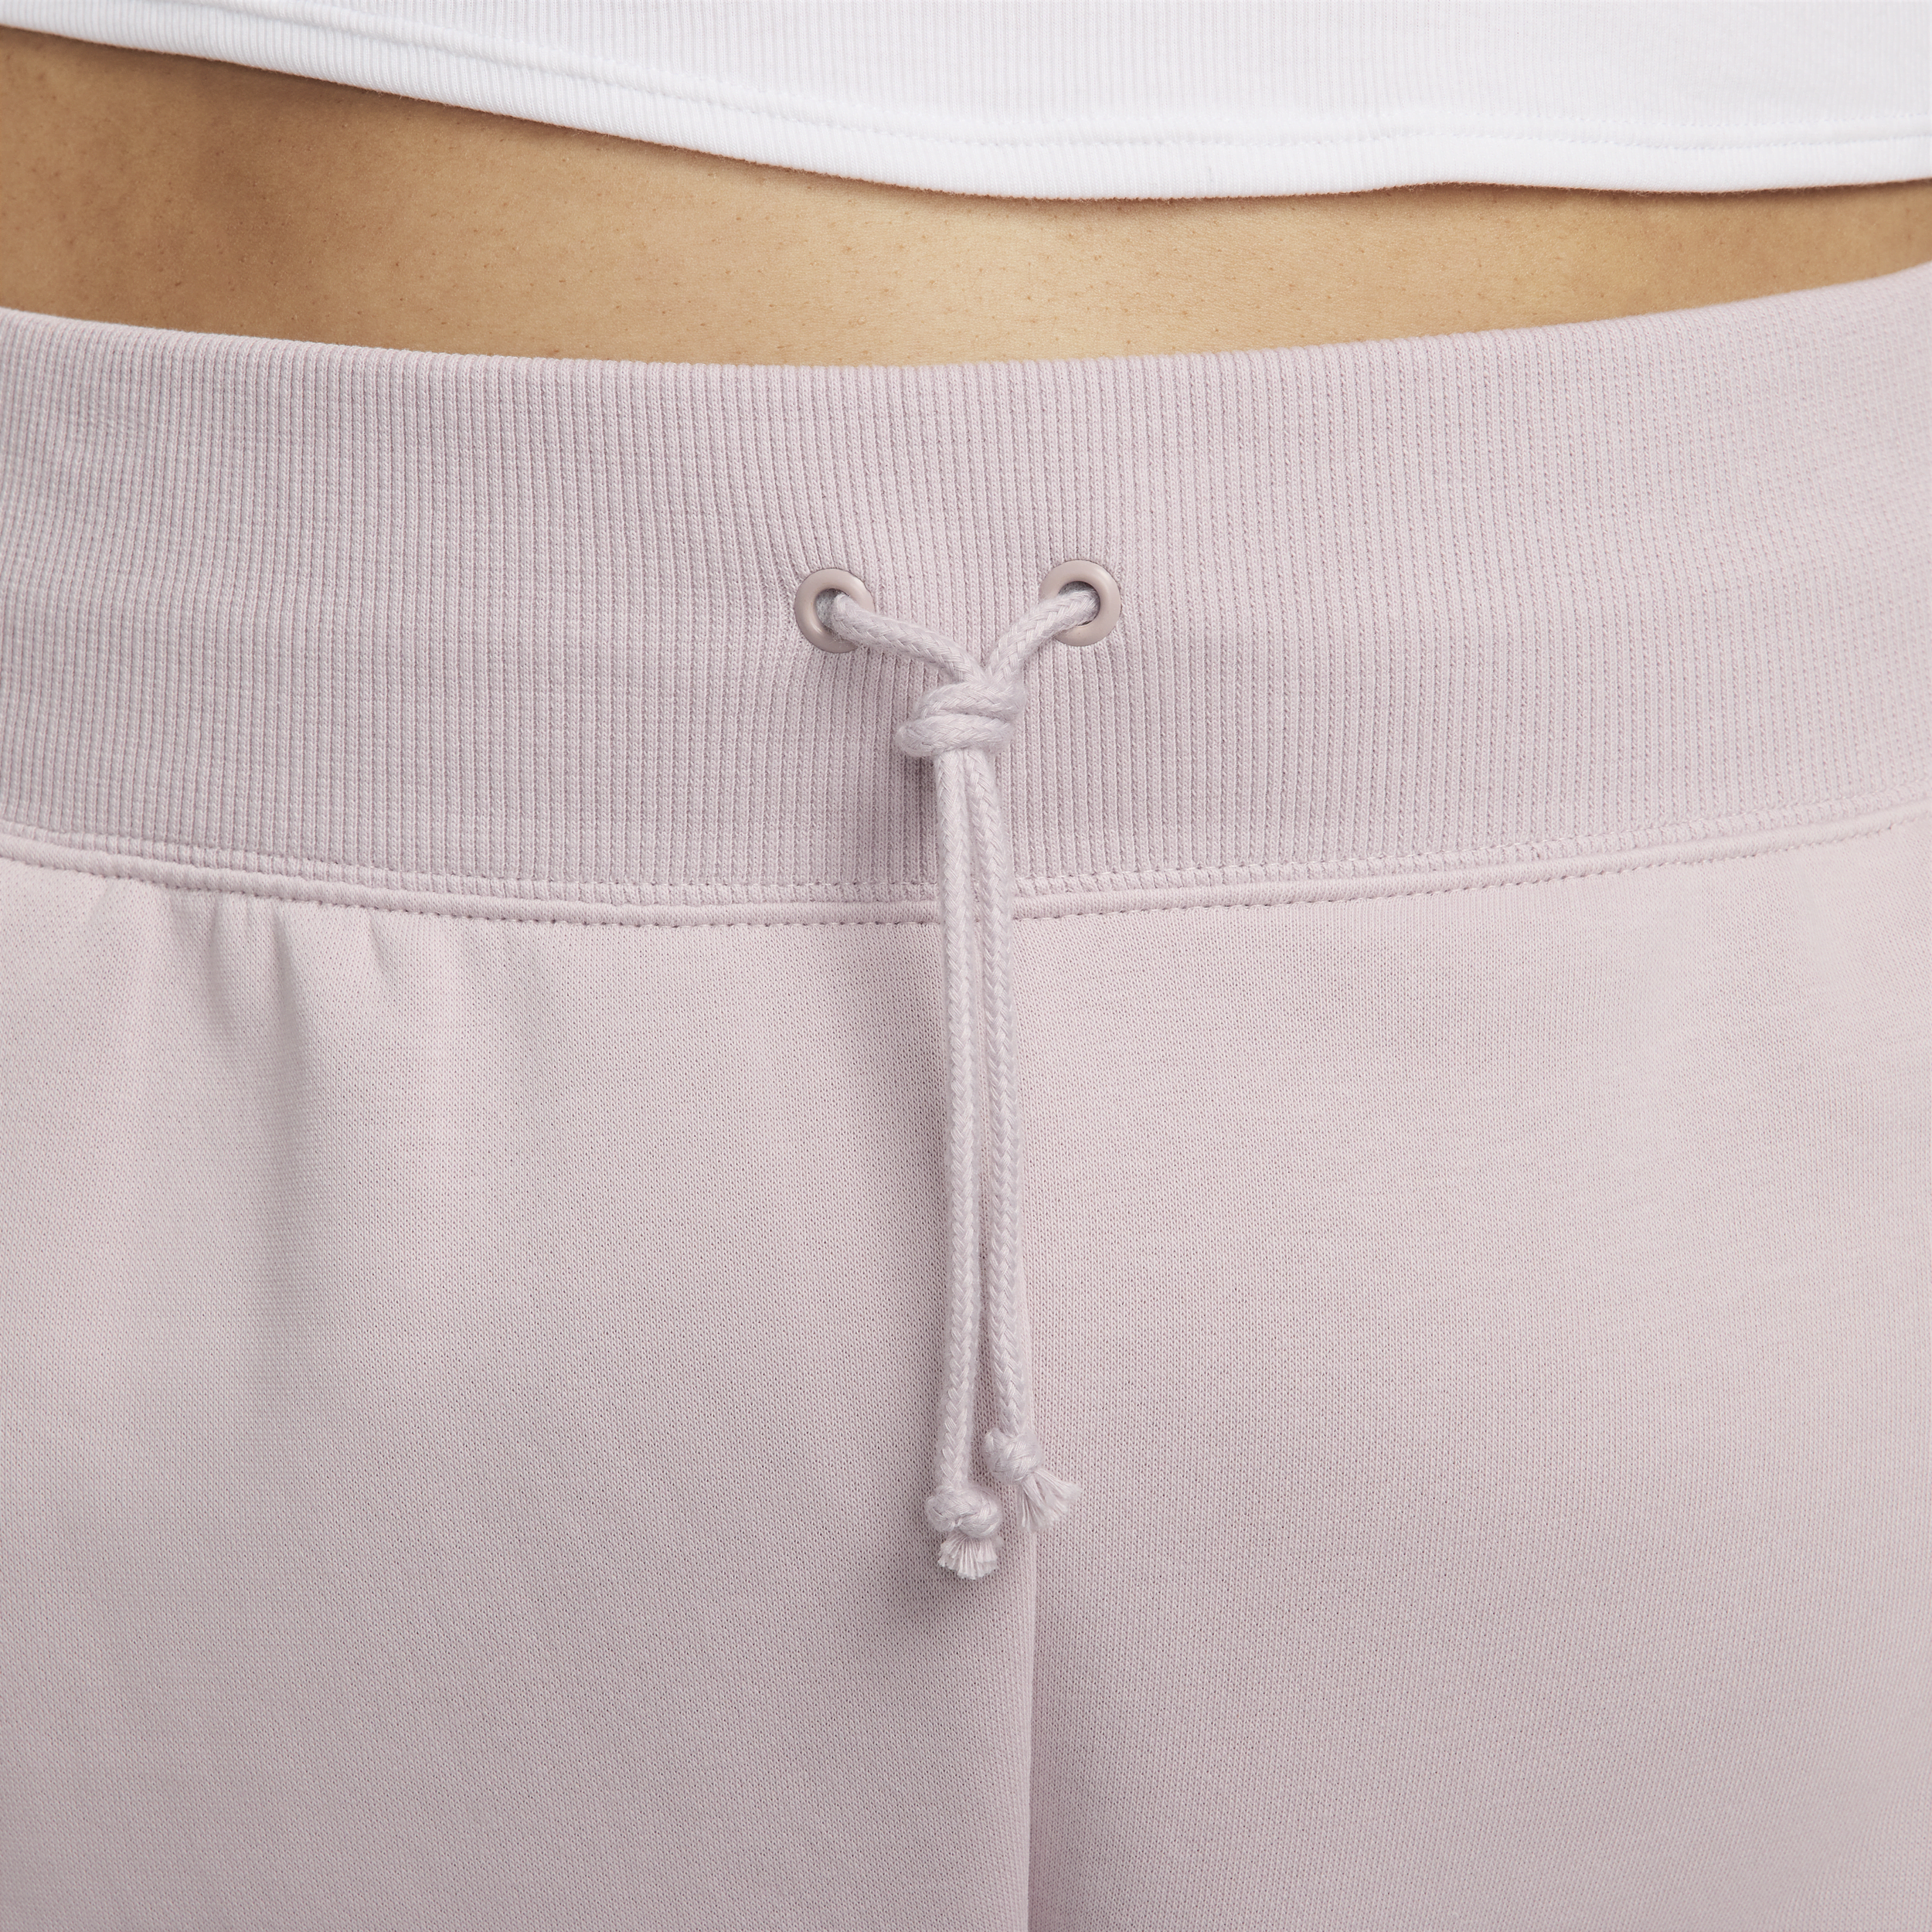 Nike Sportswear Phoenix Fleece oversized joggingbroek met logo voor dames (Plus Size) Paars